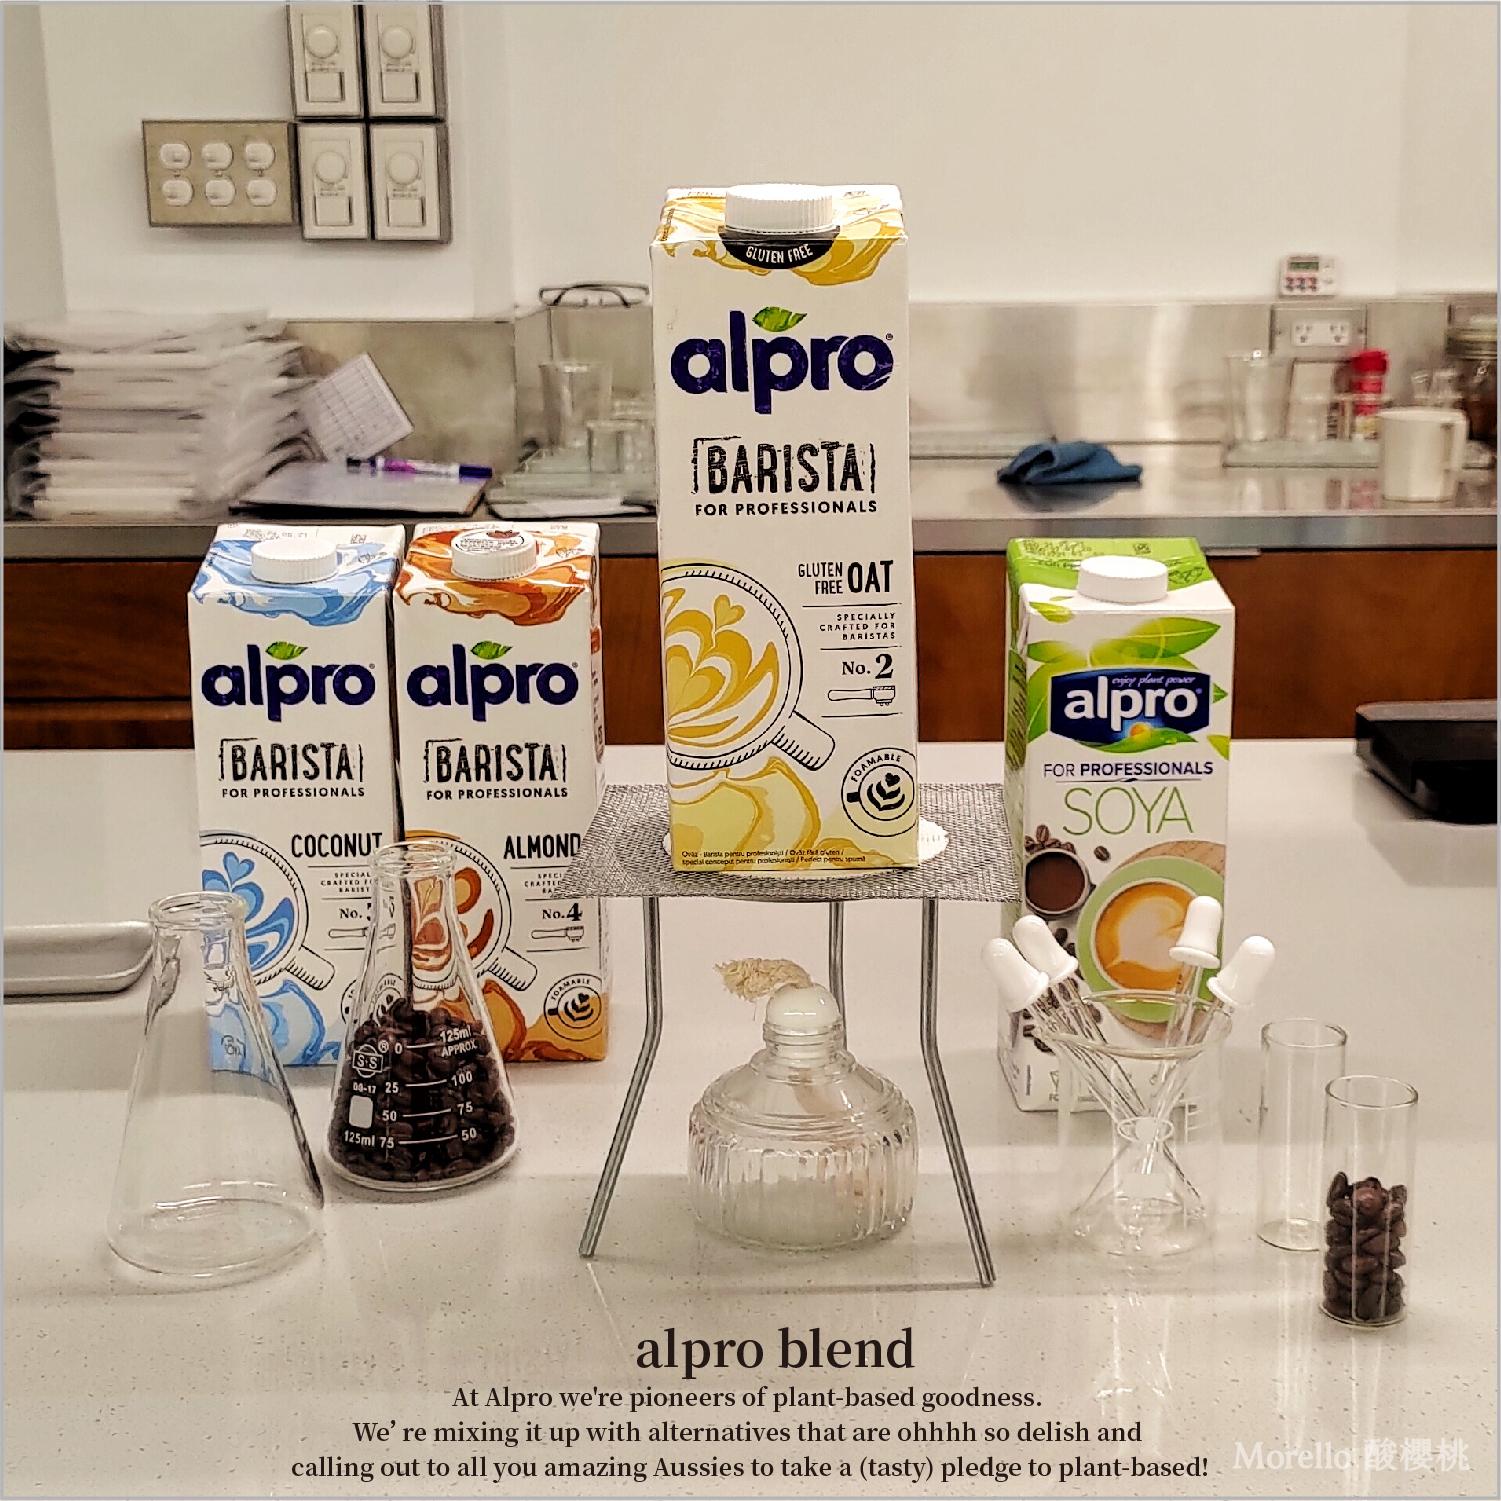 歐洲第一 植物奶 「alpro」。